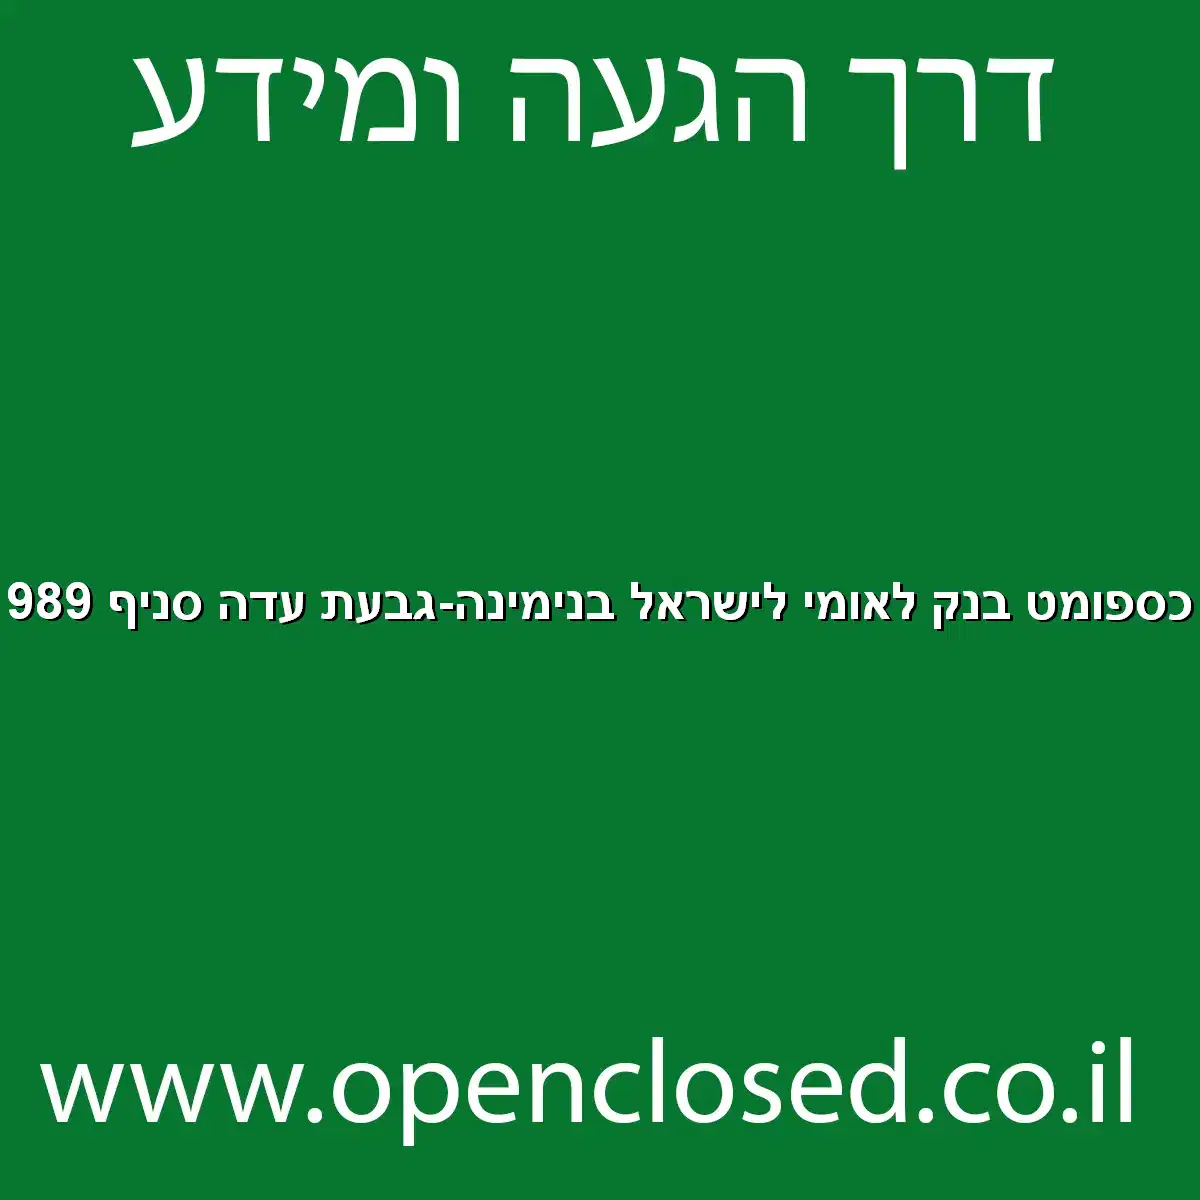 כספומט בנק לאומי לישראל בנימינה-גבעת עדה סניף 989